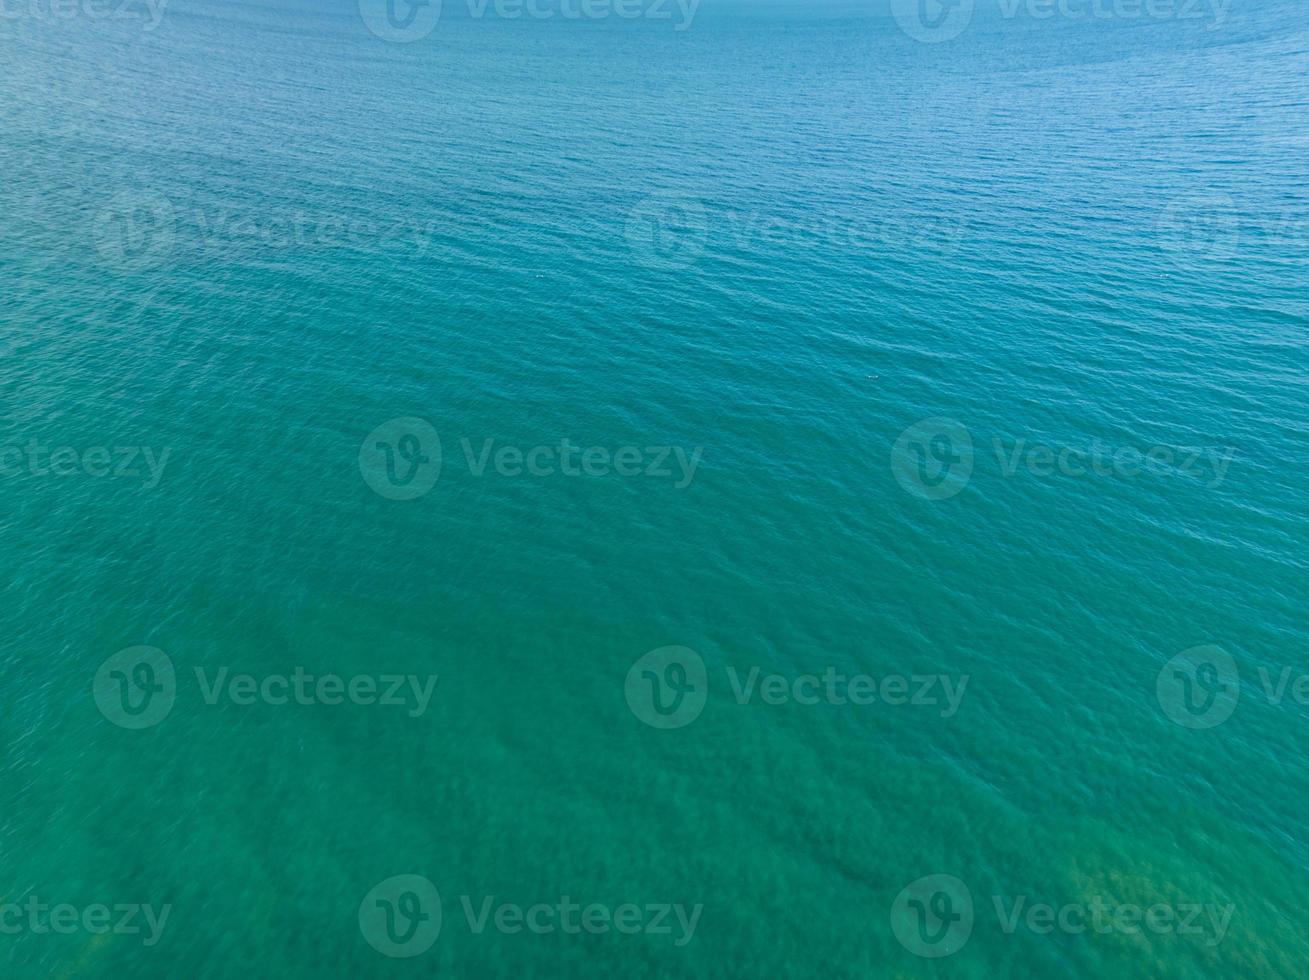 zee oppervlakte antenne uitzicht, vogel oog visie foto, bovenaan visie golven en water oppervlakte textuur, groen zee achtergrond, mooi natuur verbazingwekkend visie zee oceaan achtergrond foto